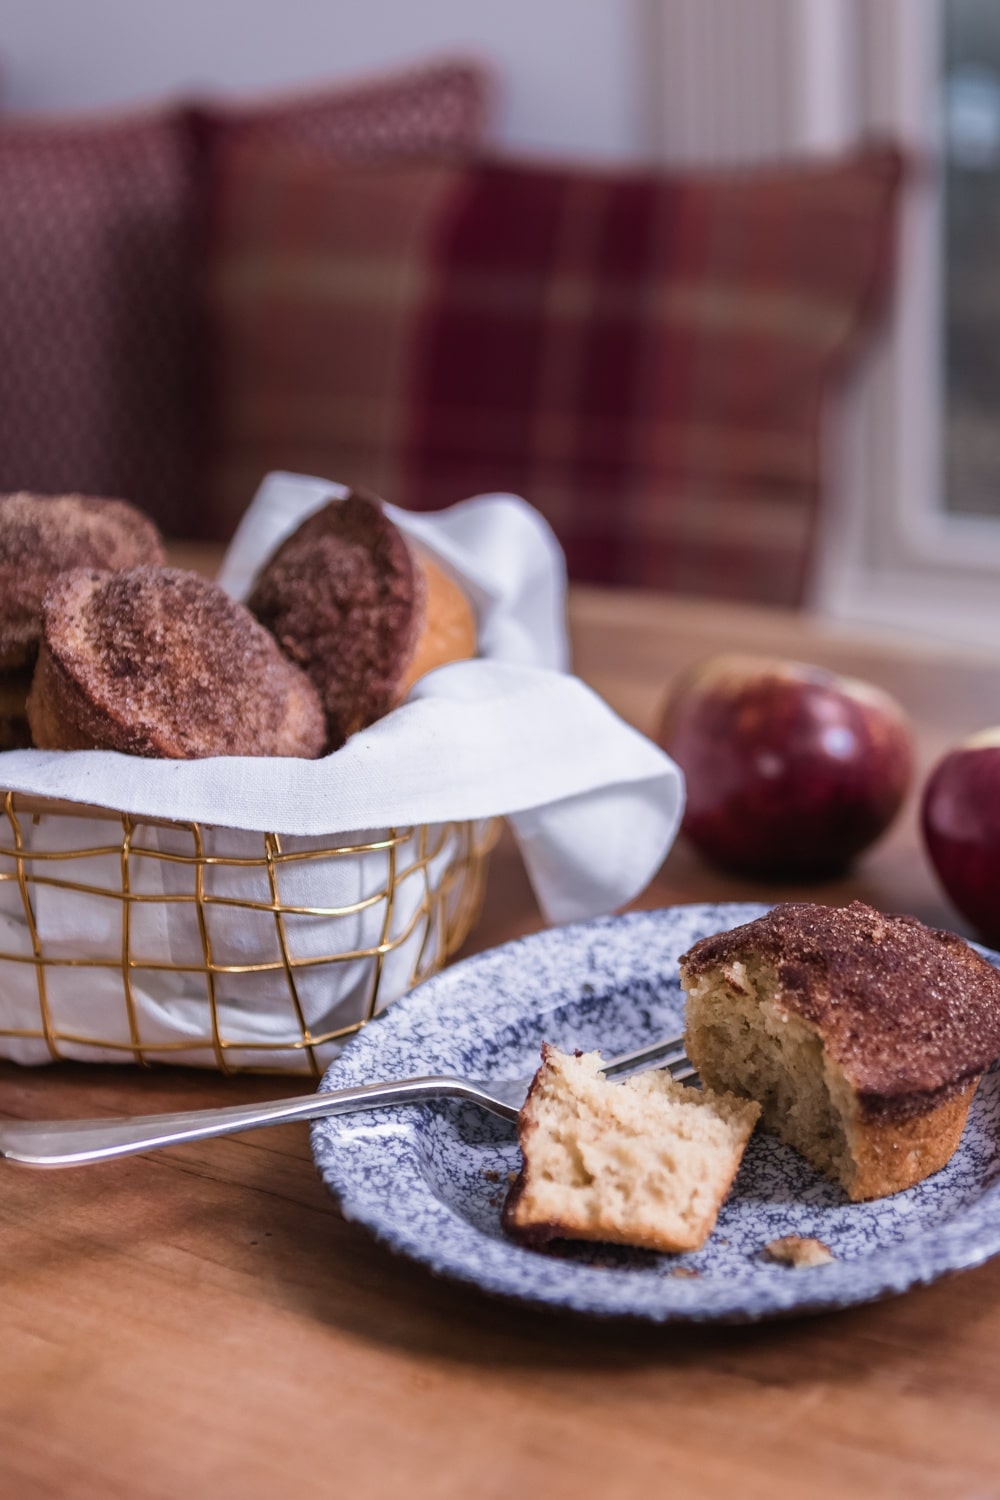 cider-doughnut-muffin-recipe-wwy